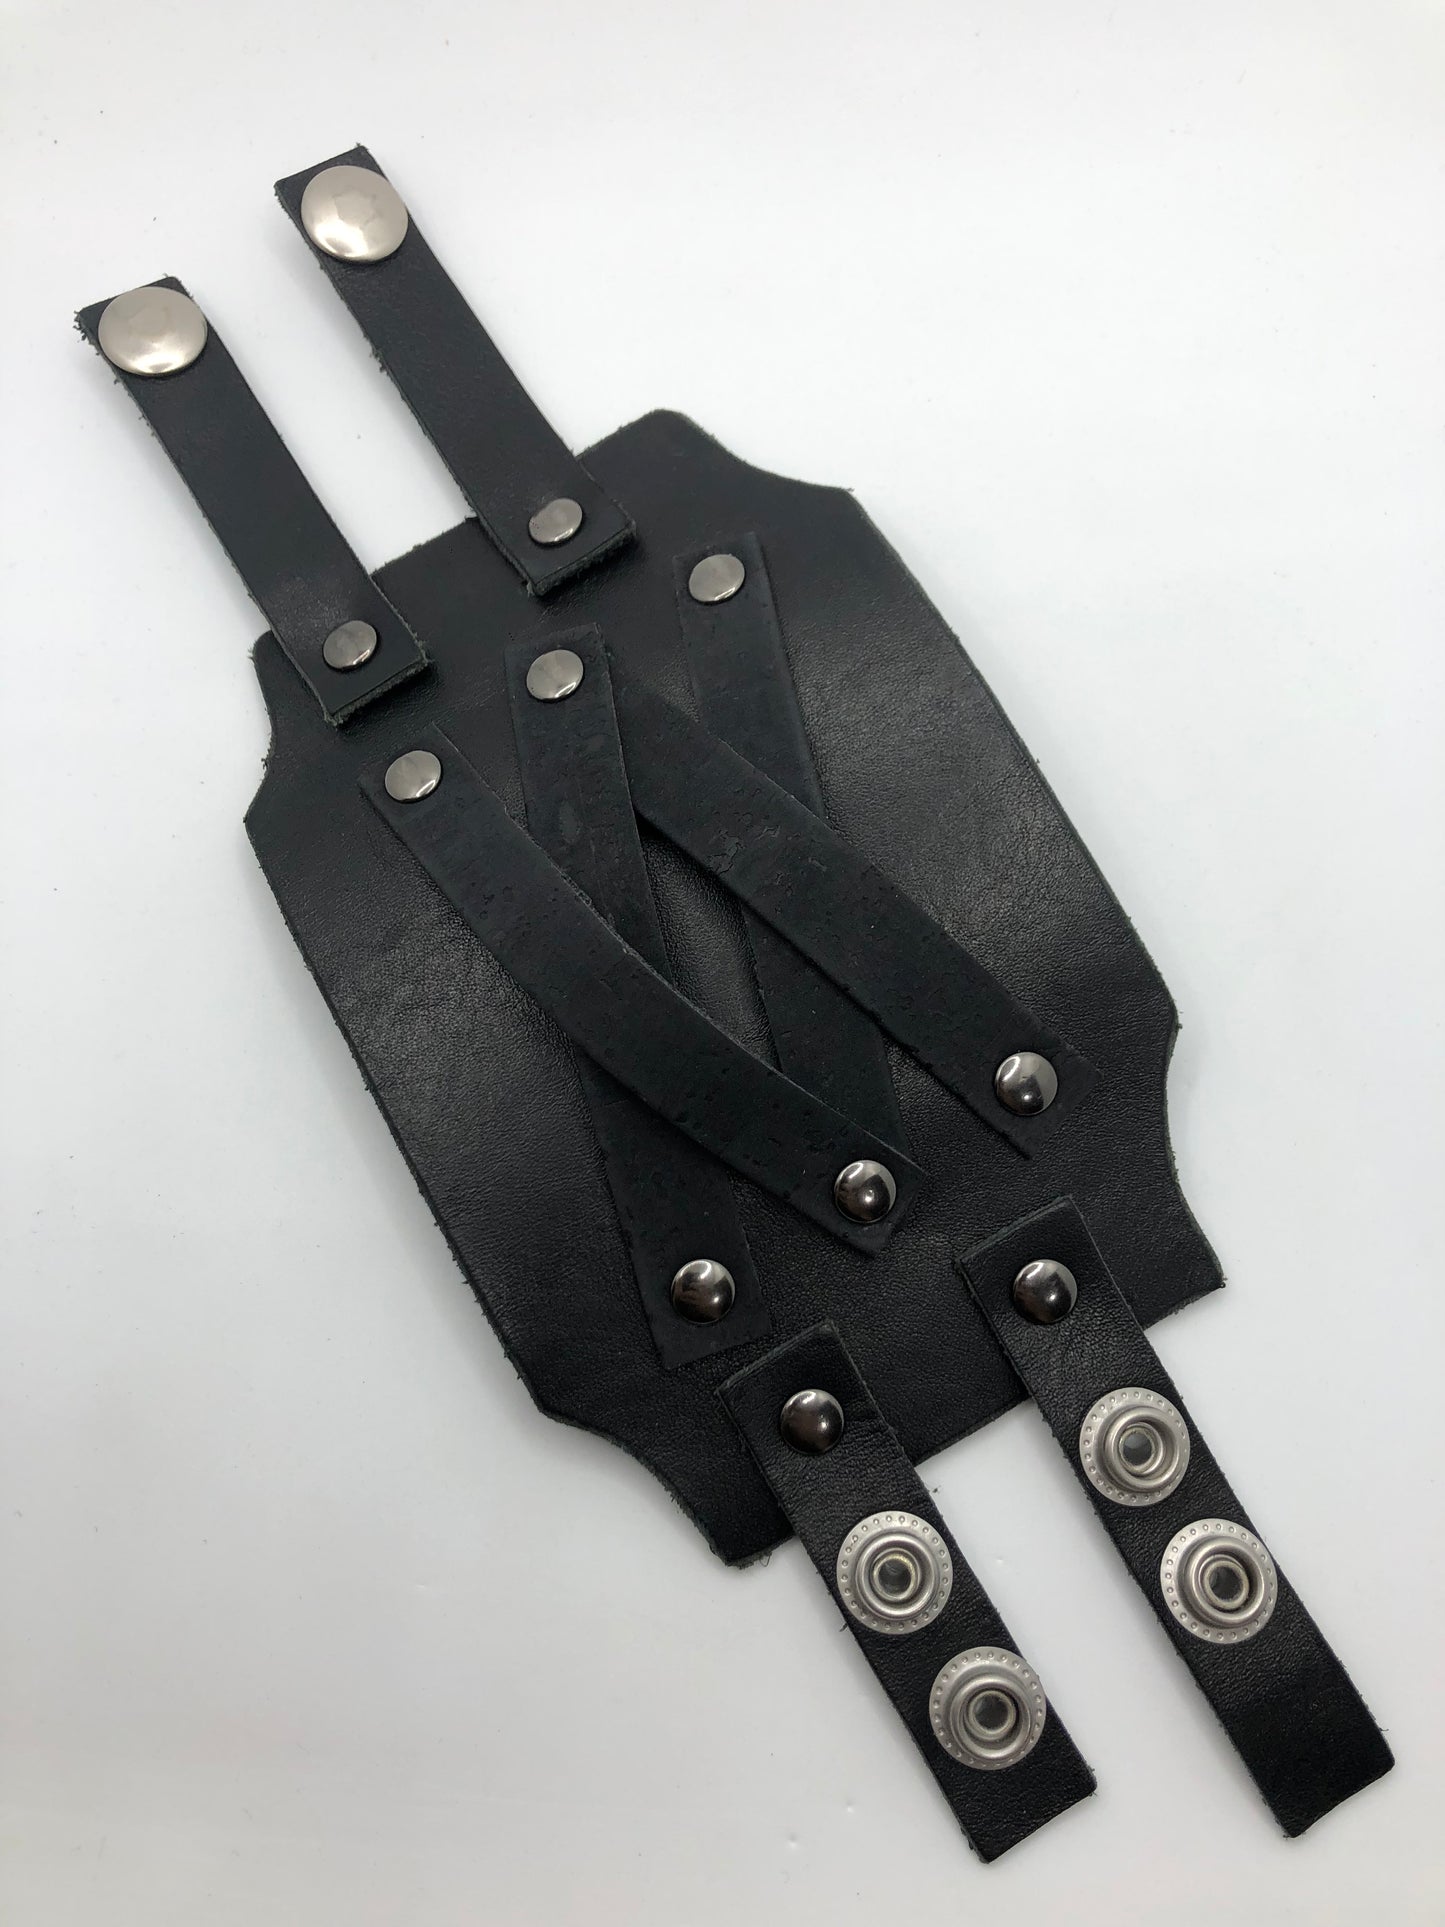 Conan Cuff - Black Leather Wide Wristband